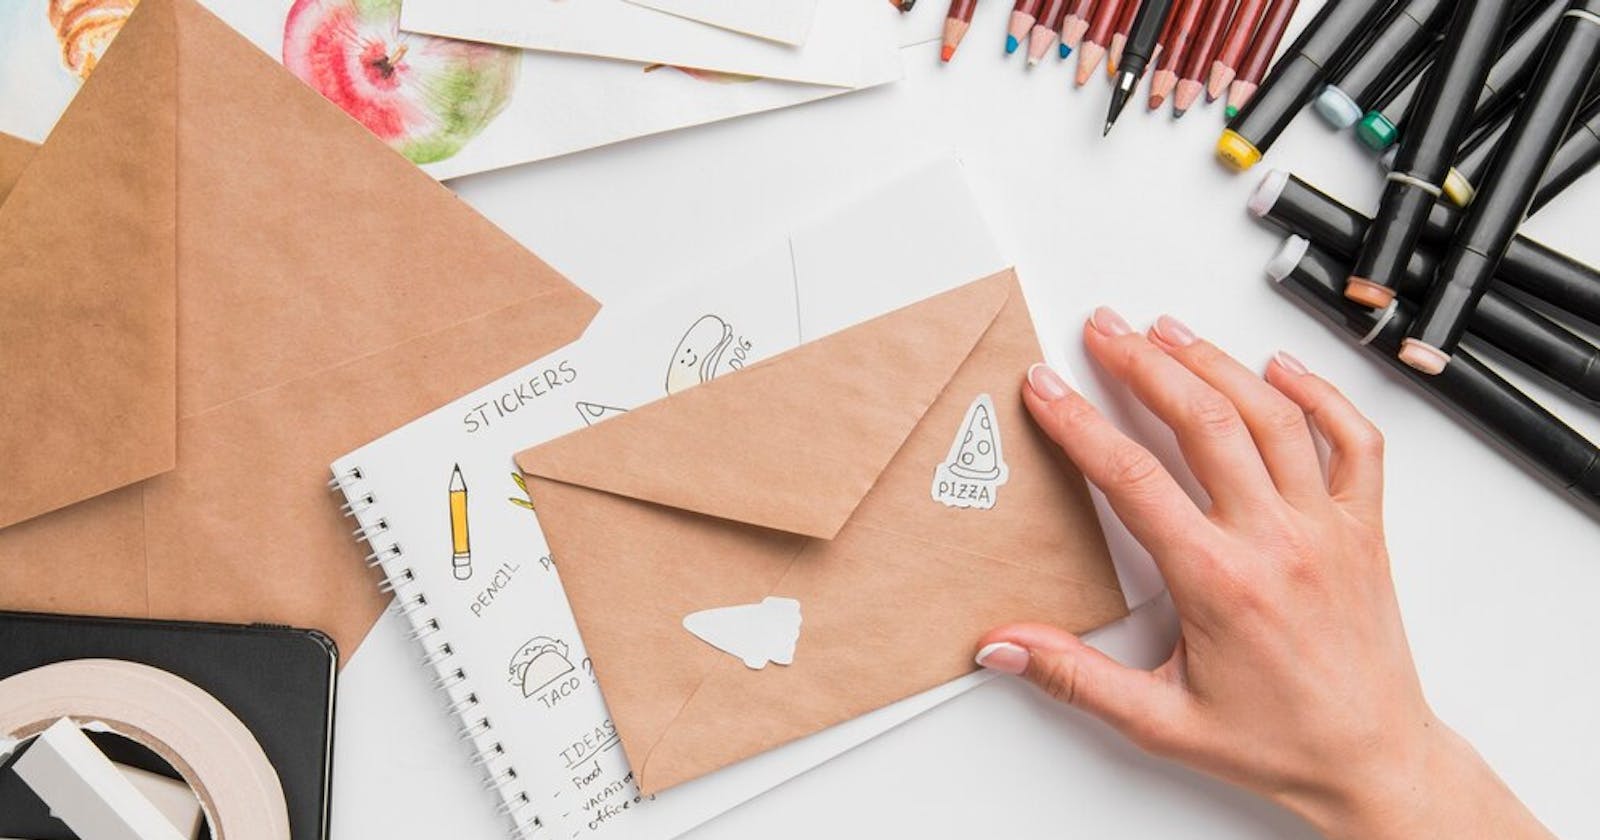 O Método dos Envelopes: Controle Seus Gastos com Simplicidade e Eficiência